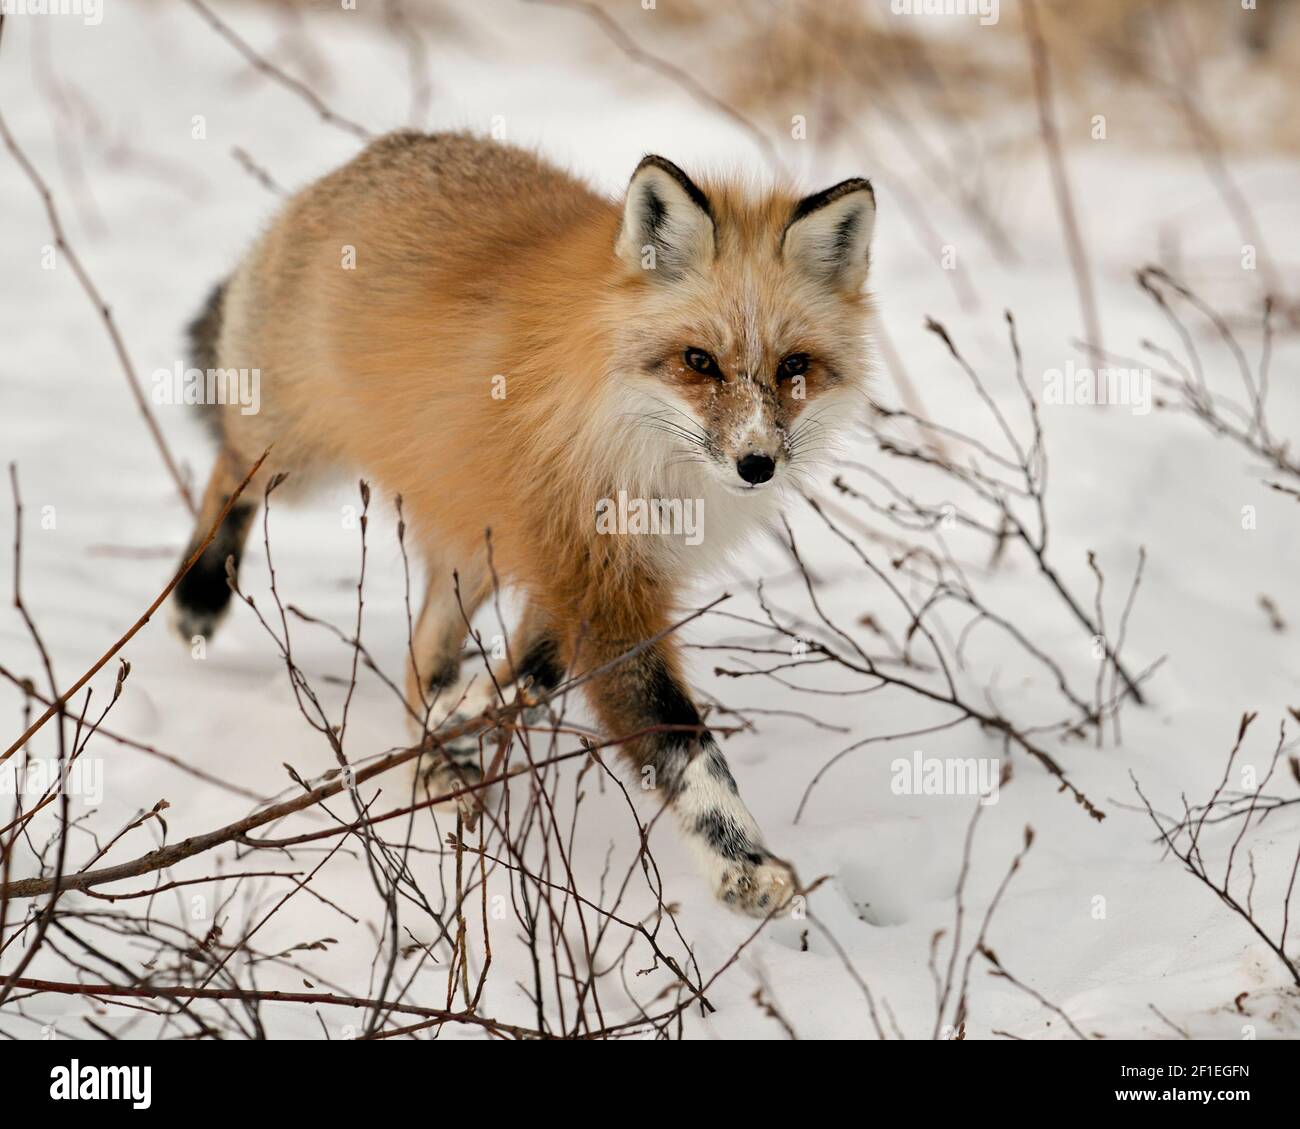 Profil de renard unique rouge en gros plan marchant vers vous et regardant l'appareil photo en hiver dans son environnement avec un fond de neige flou. Fox image. Banque D'Images